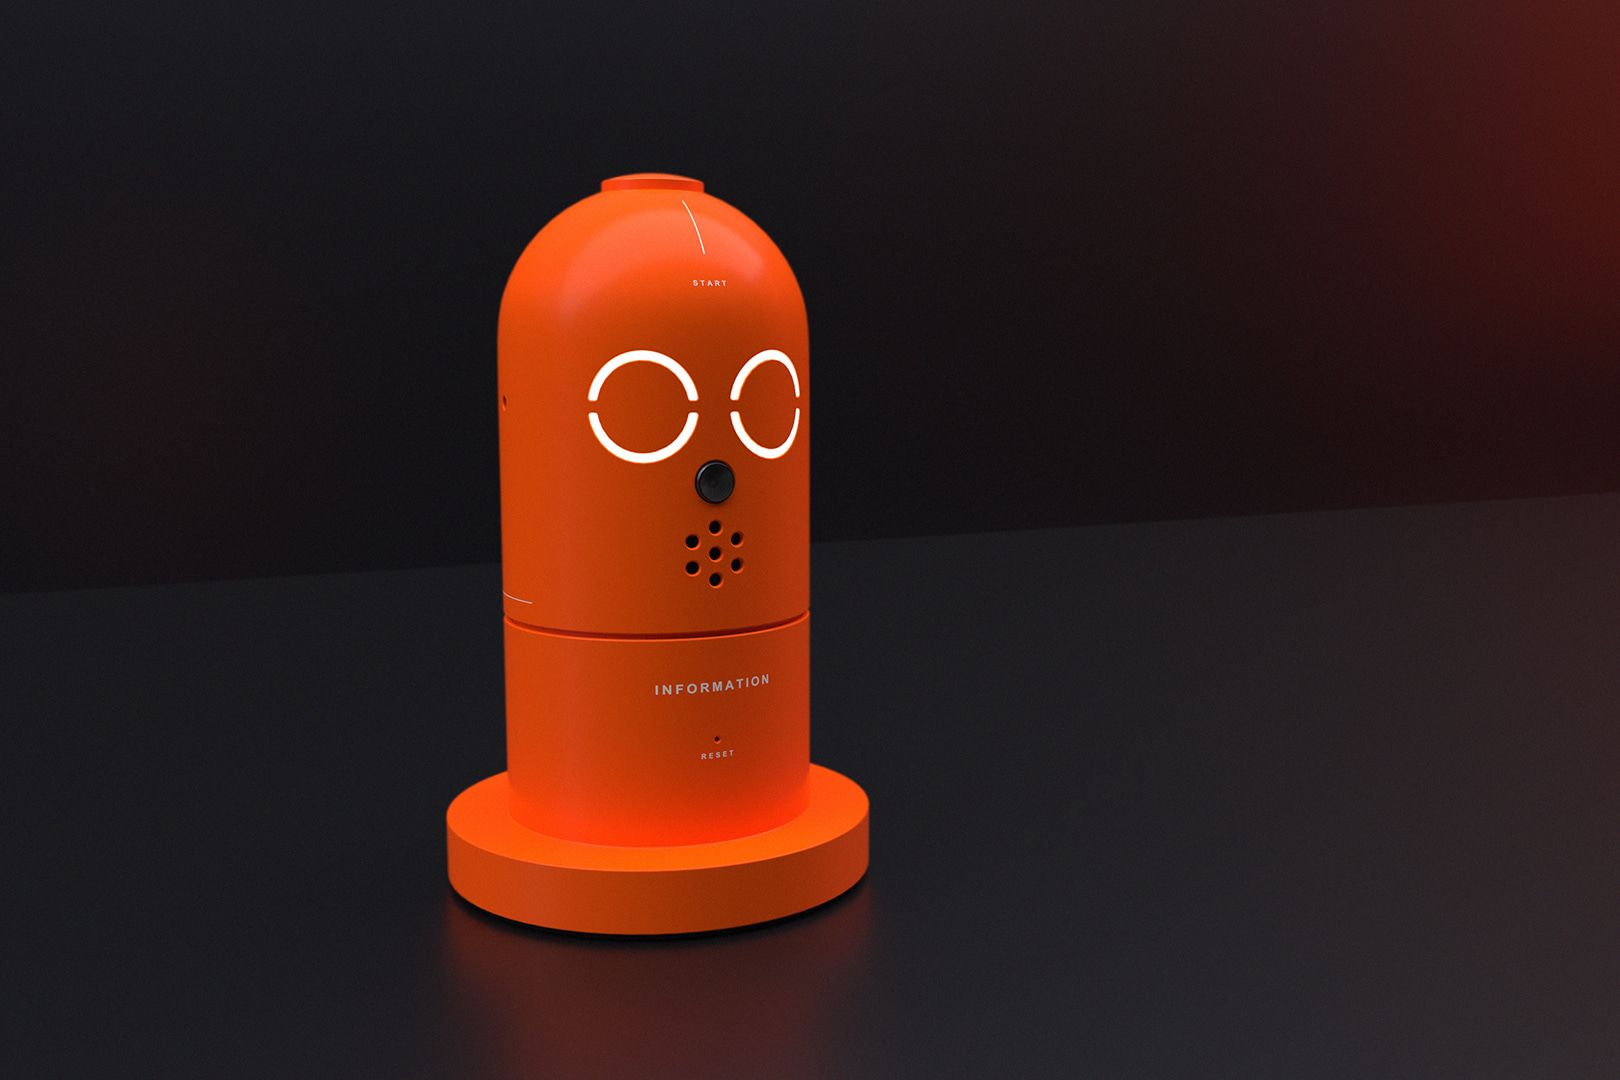 Information Robot @object_designer